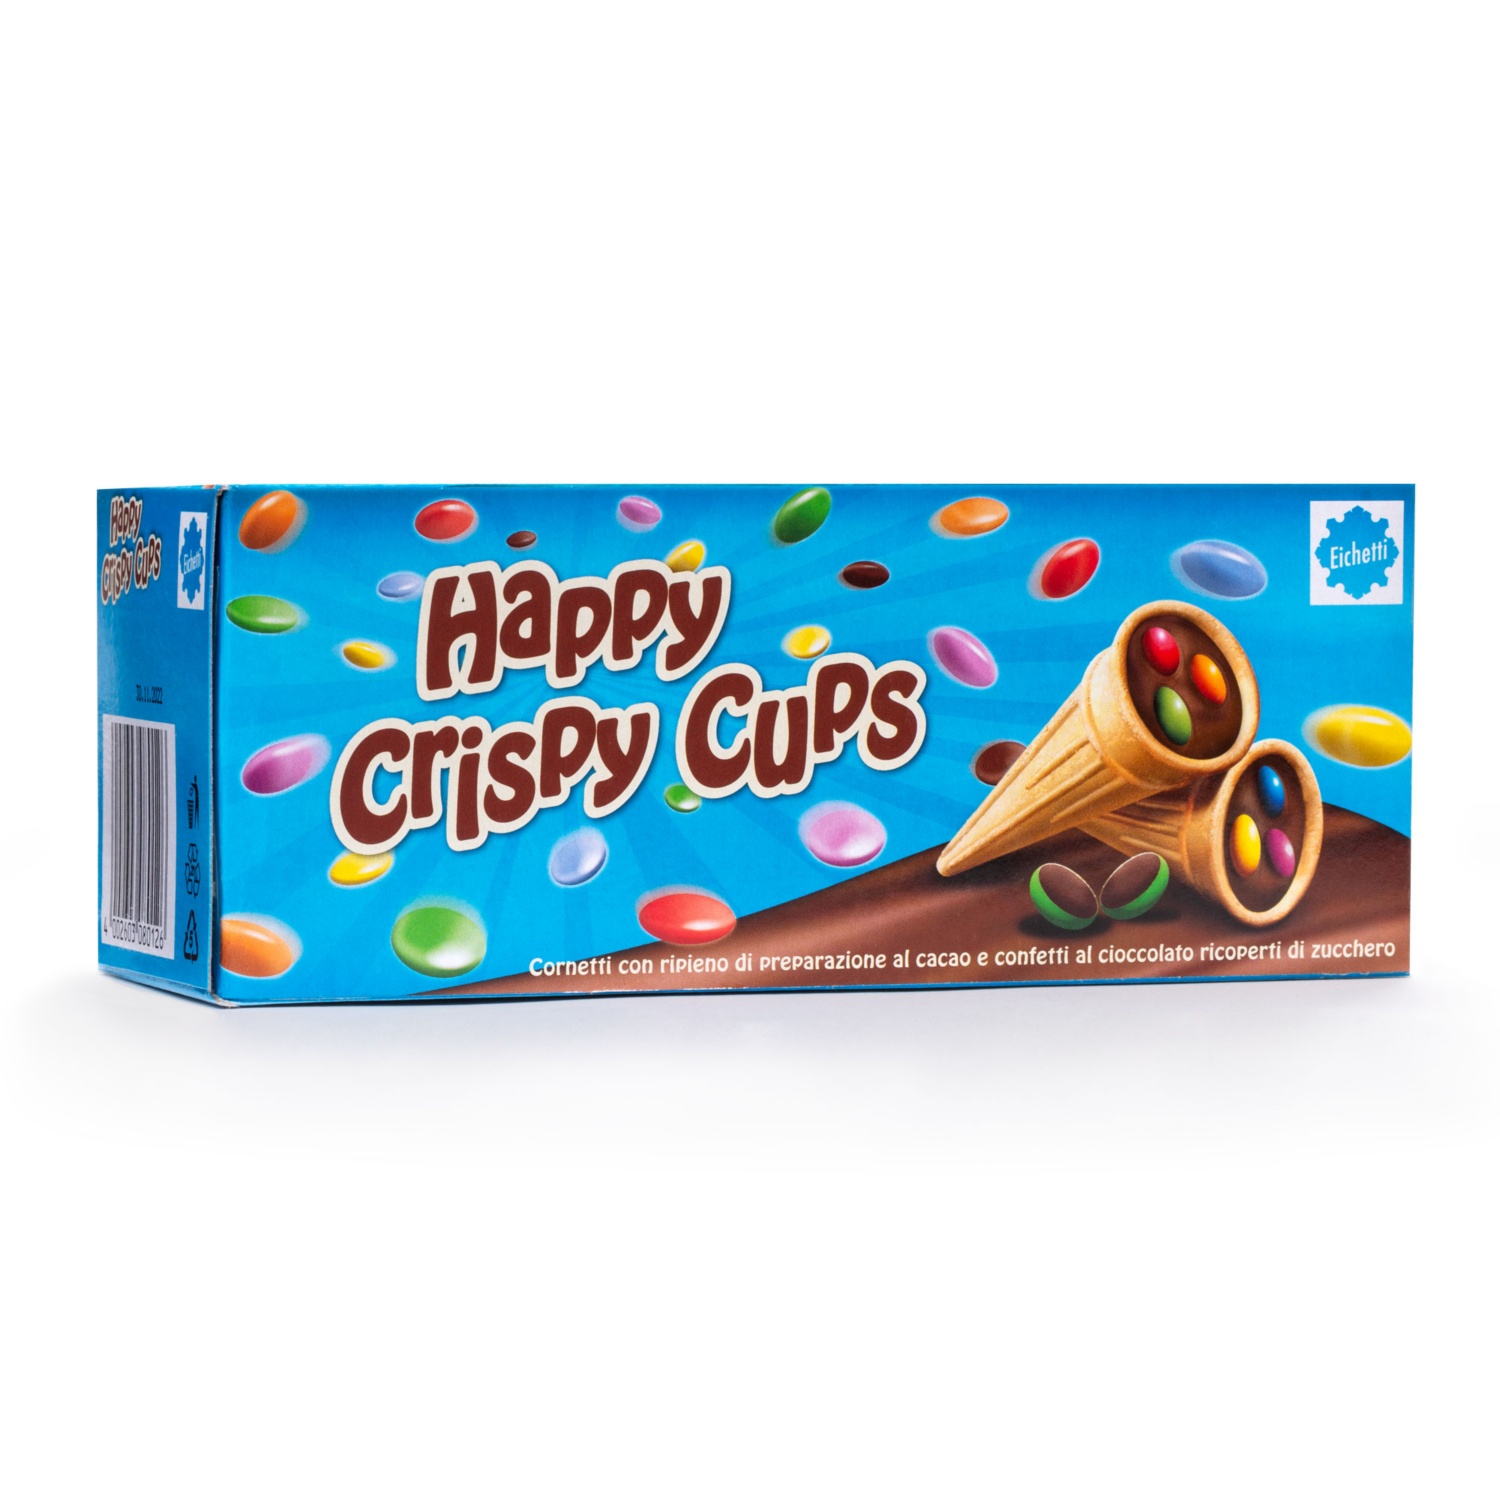 EICHETTI Crispy Cups confettini di cioccolato